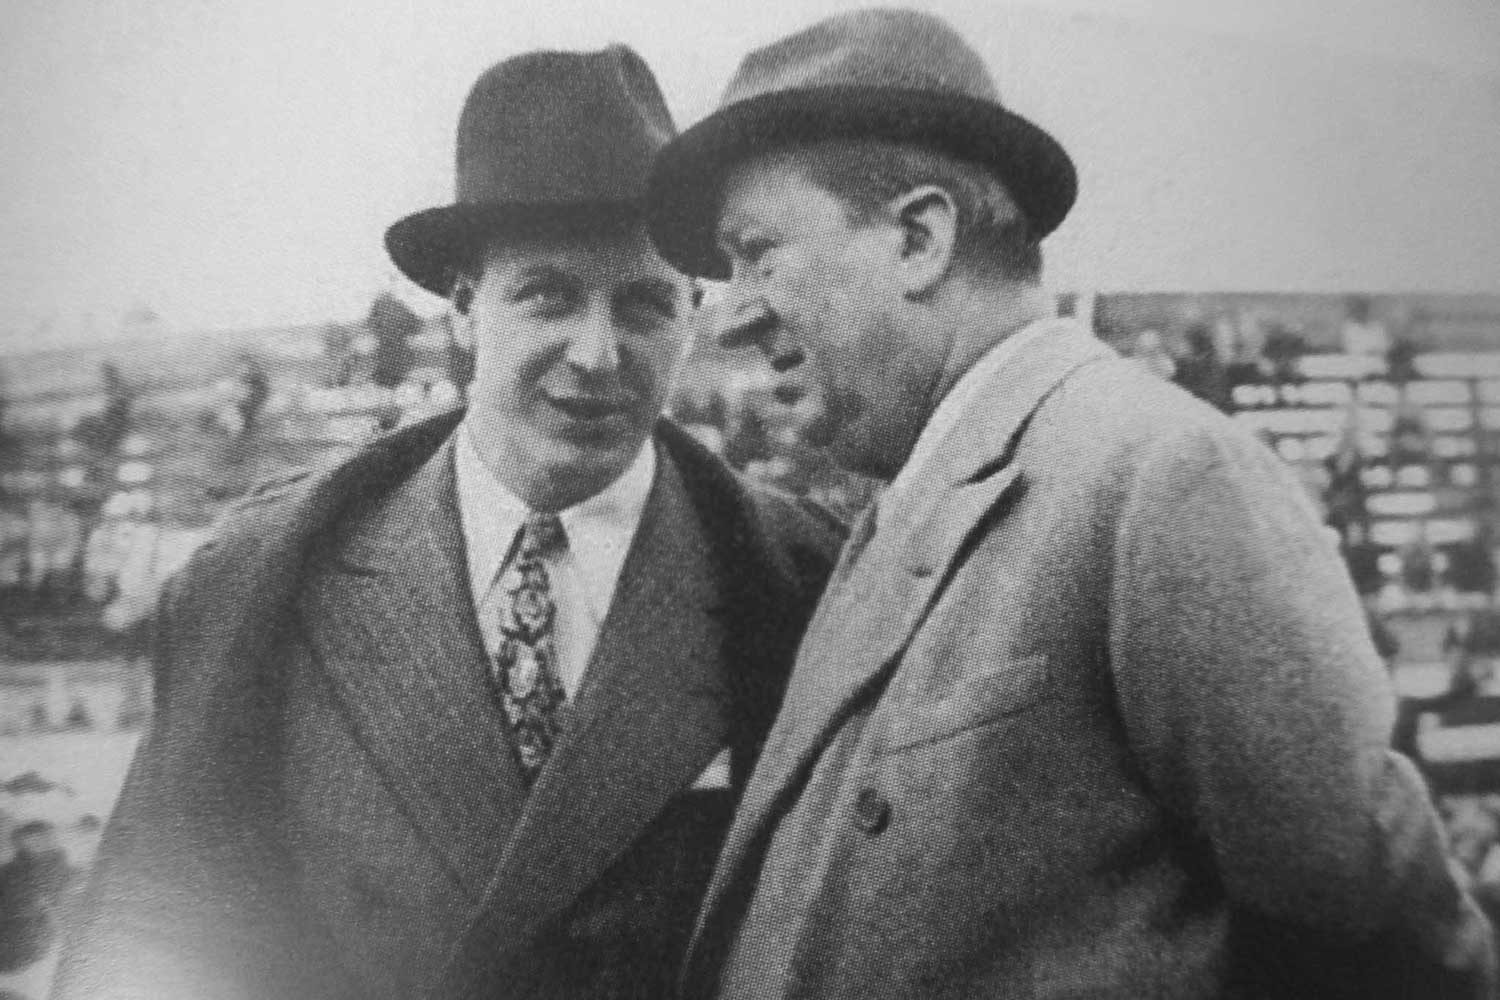 Ettore Bugatti and his son, Jean Bugatti